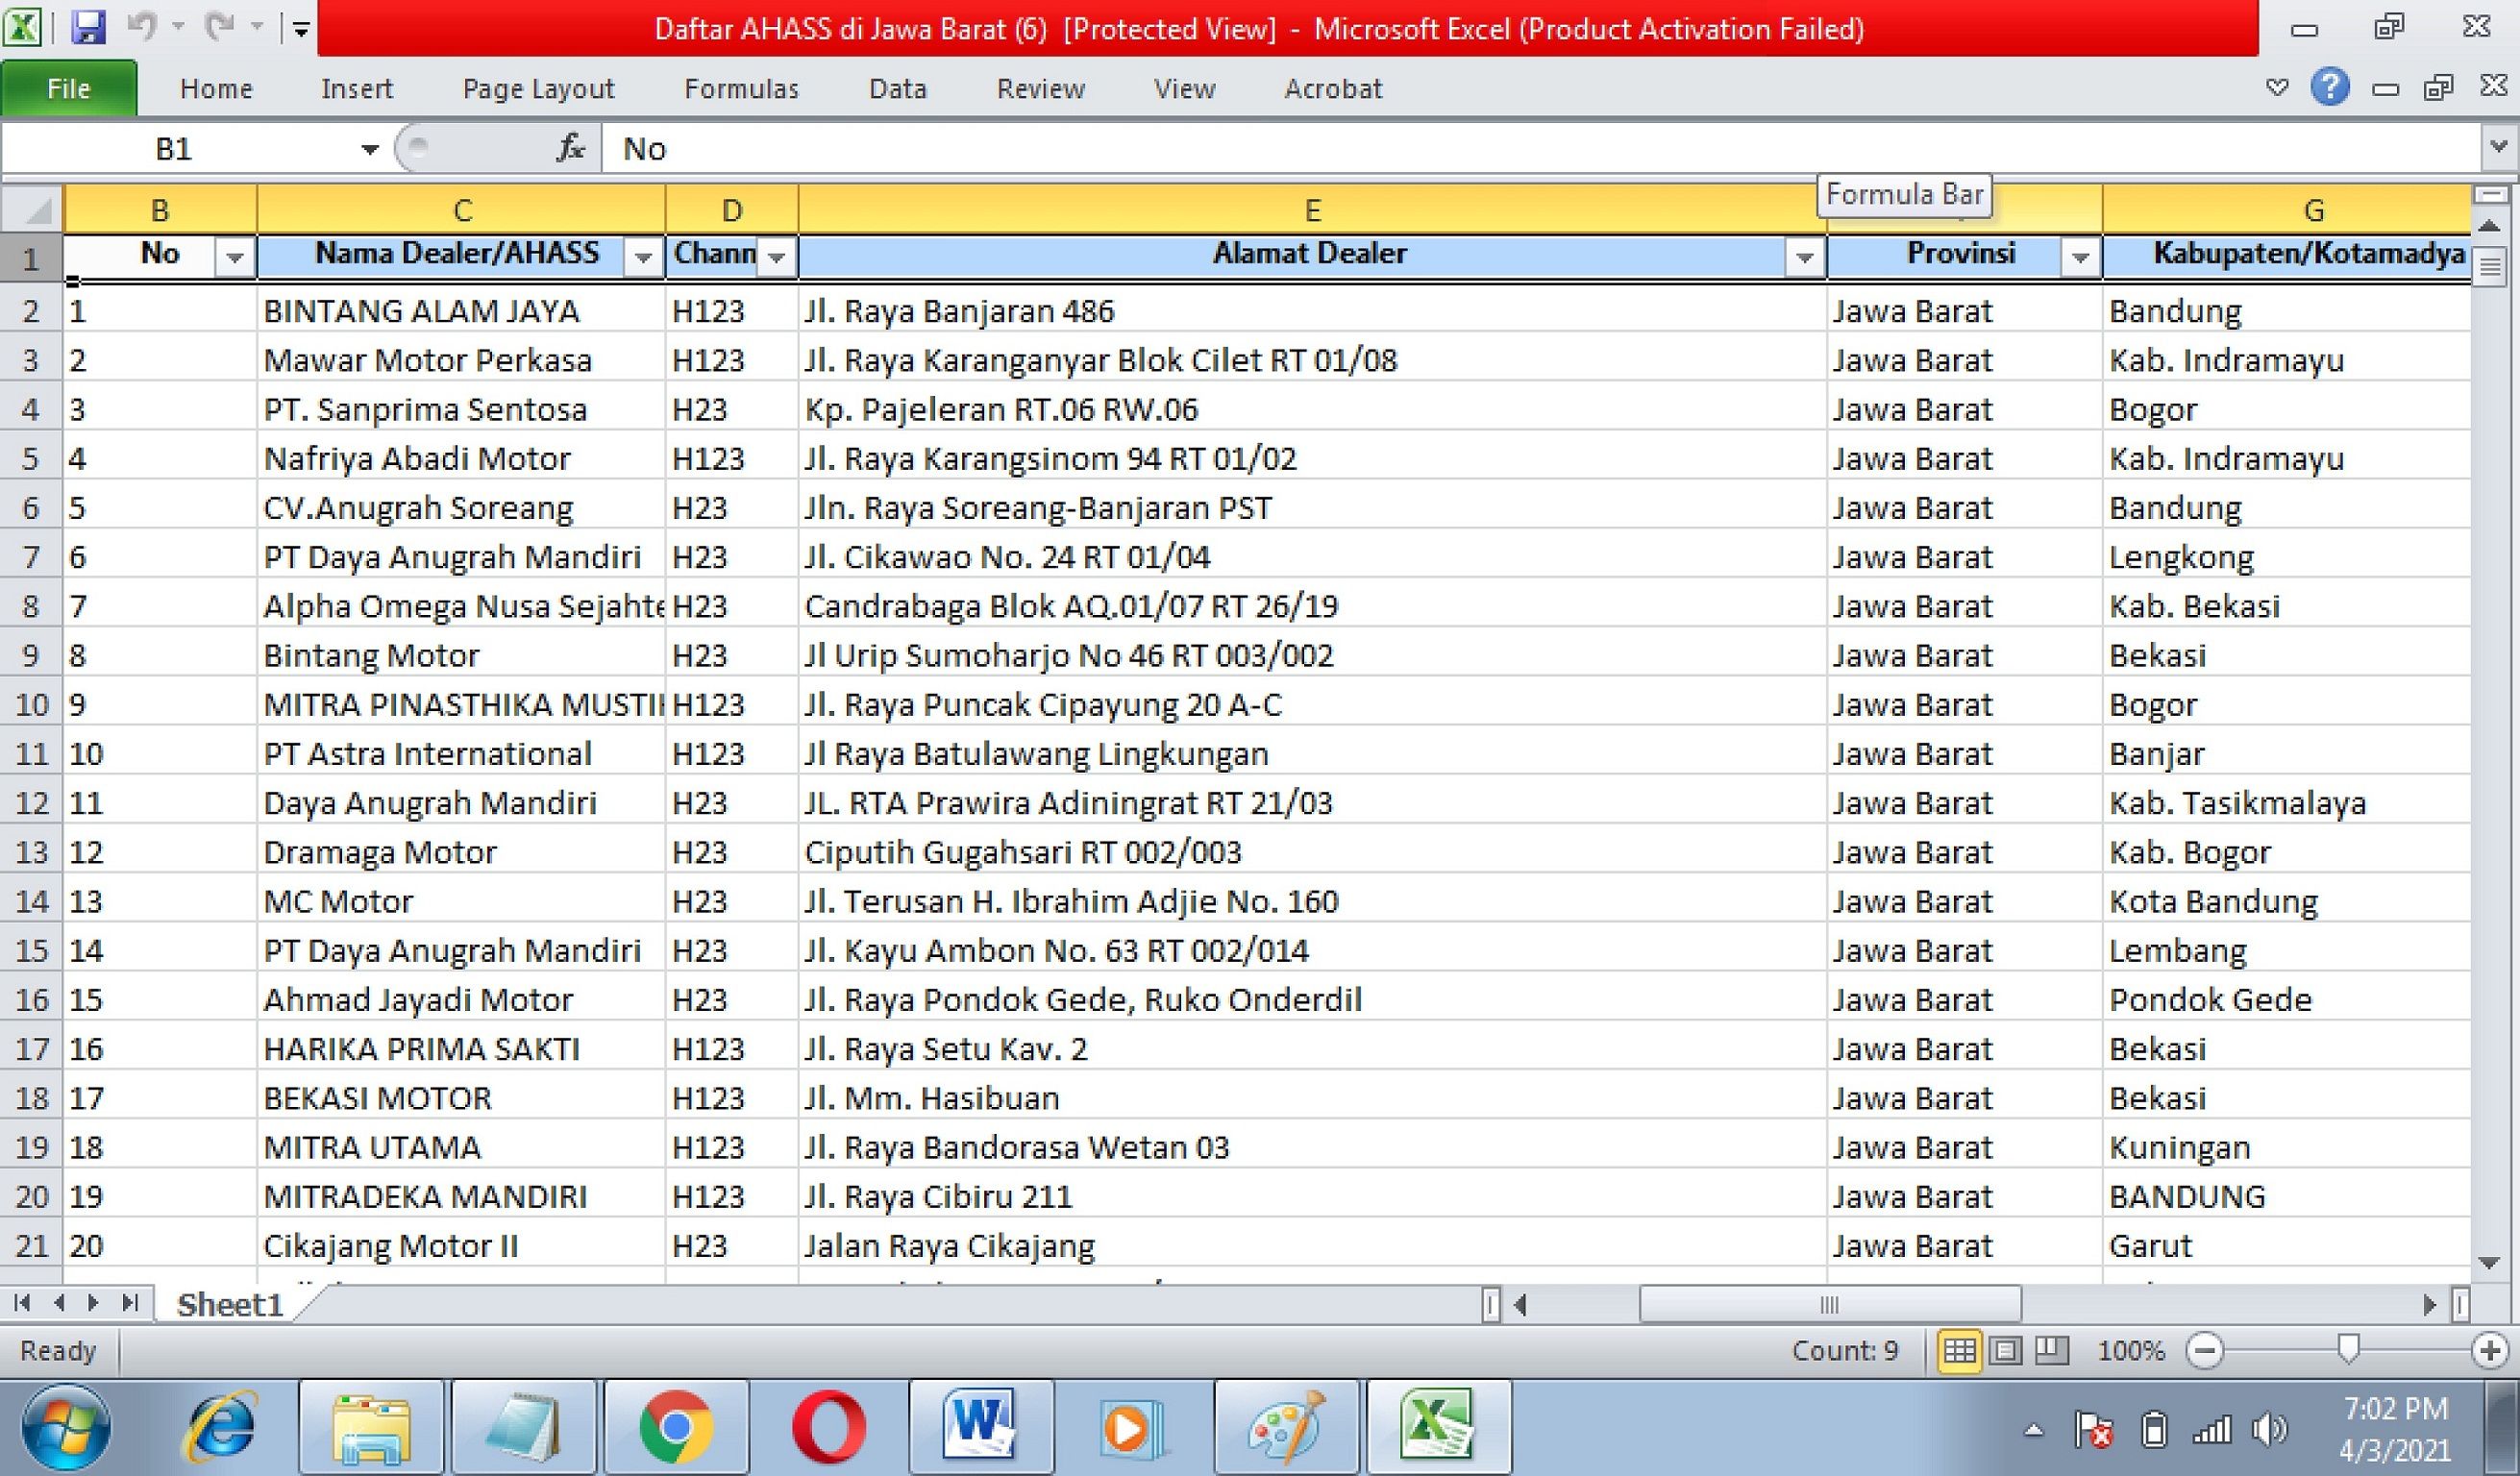  Update daftar lengkap AHASS di Jawa Barat berikut kategori channel serta alamatnya.